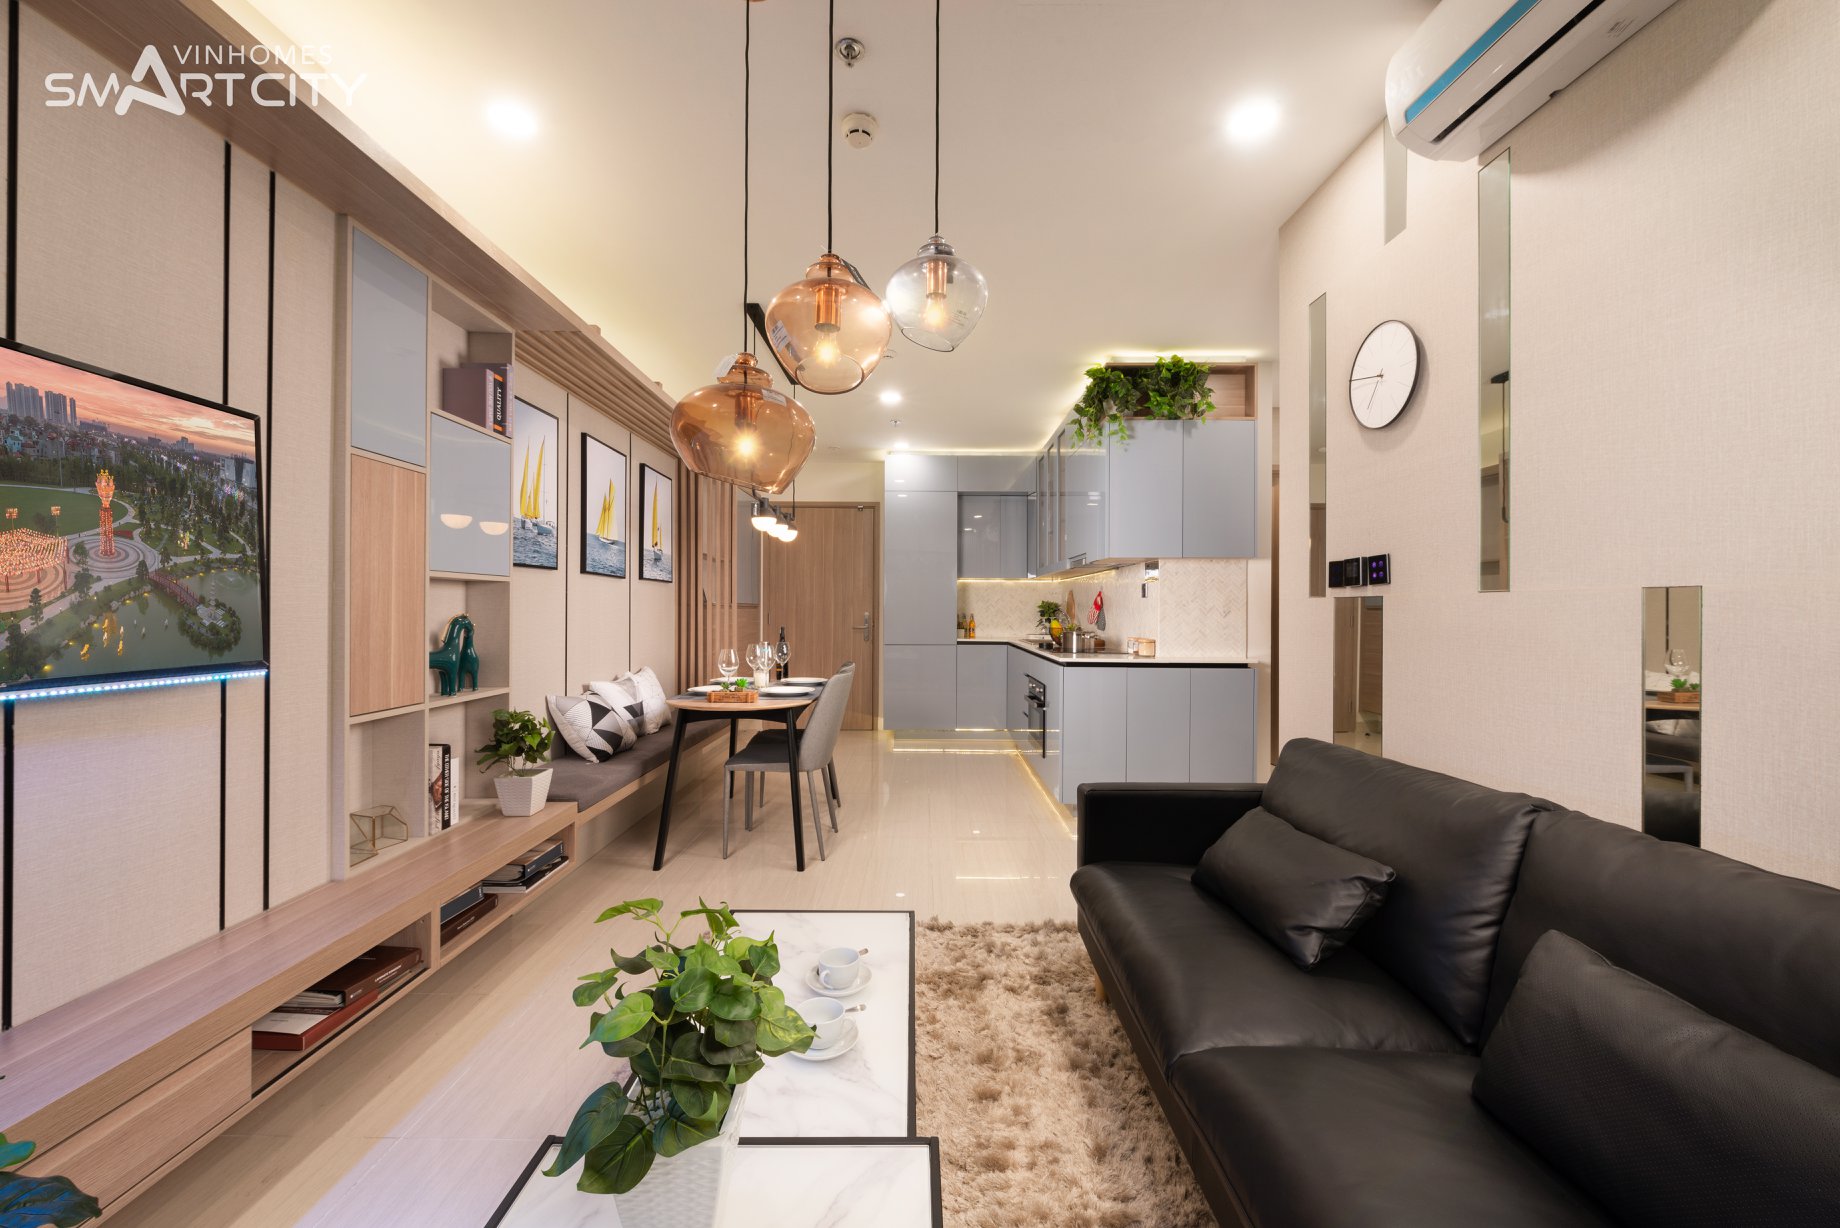 Những ưu điểm căn hộ 2 phòng ngủ Vinhomes Smart City thu hút khách mua